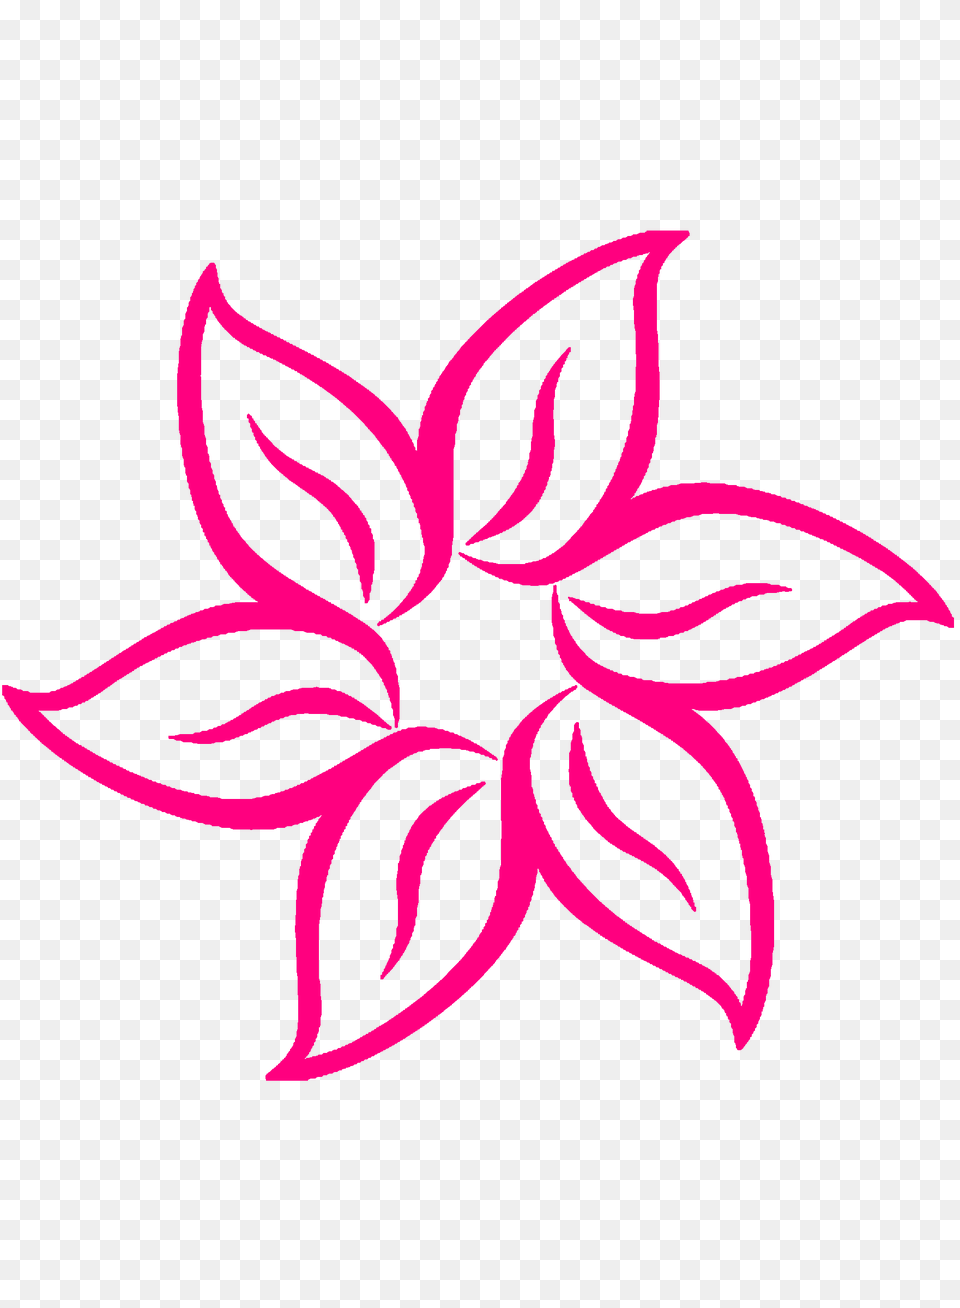 Resultado De Imagen Para Flor Dibujo Art Flowers, Plant, Pattern, Graphics, Flower Free Transparent Png